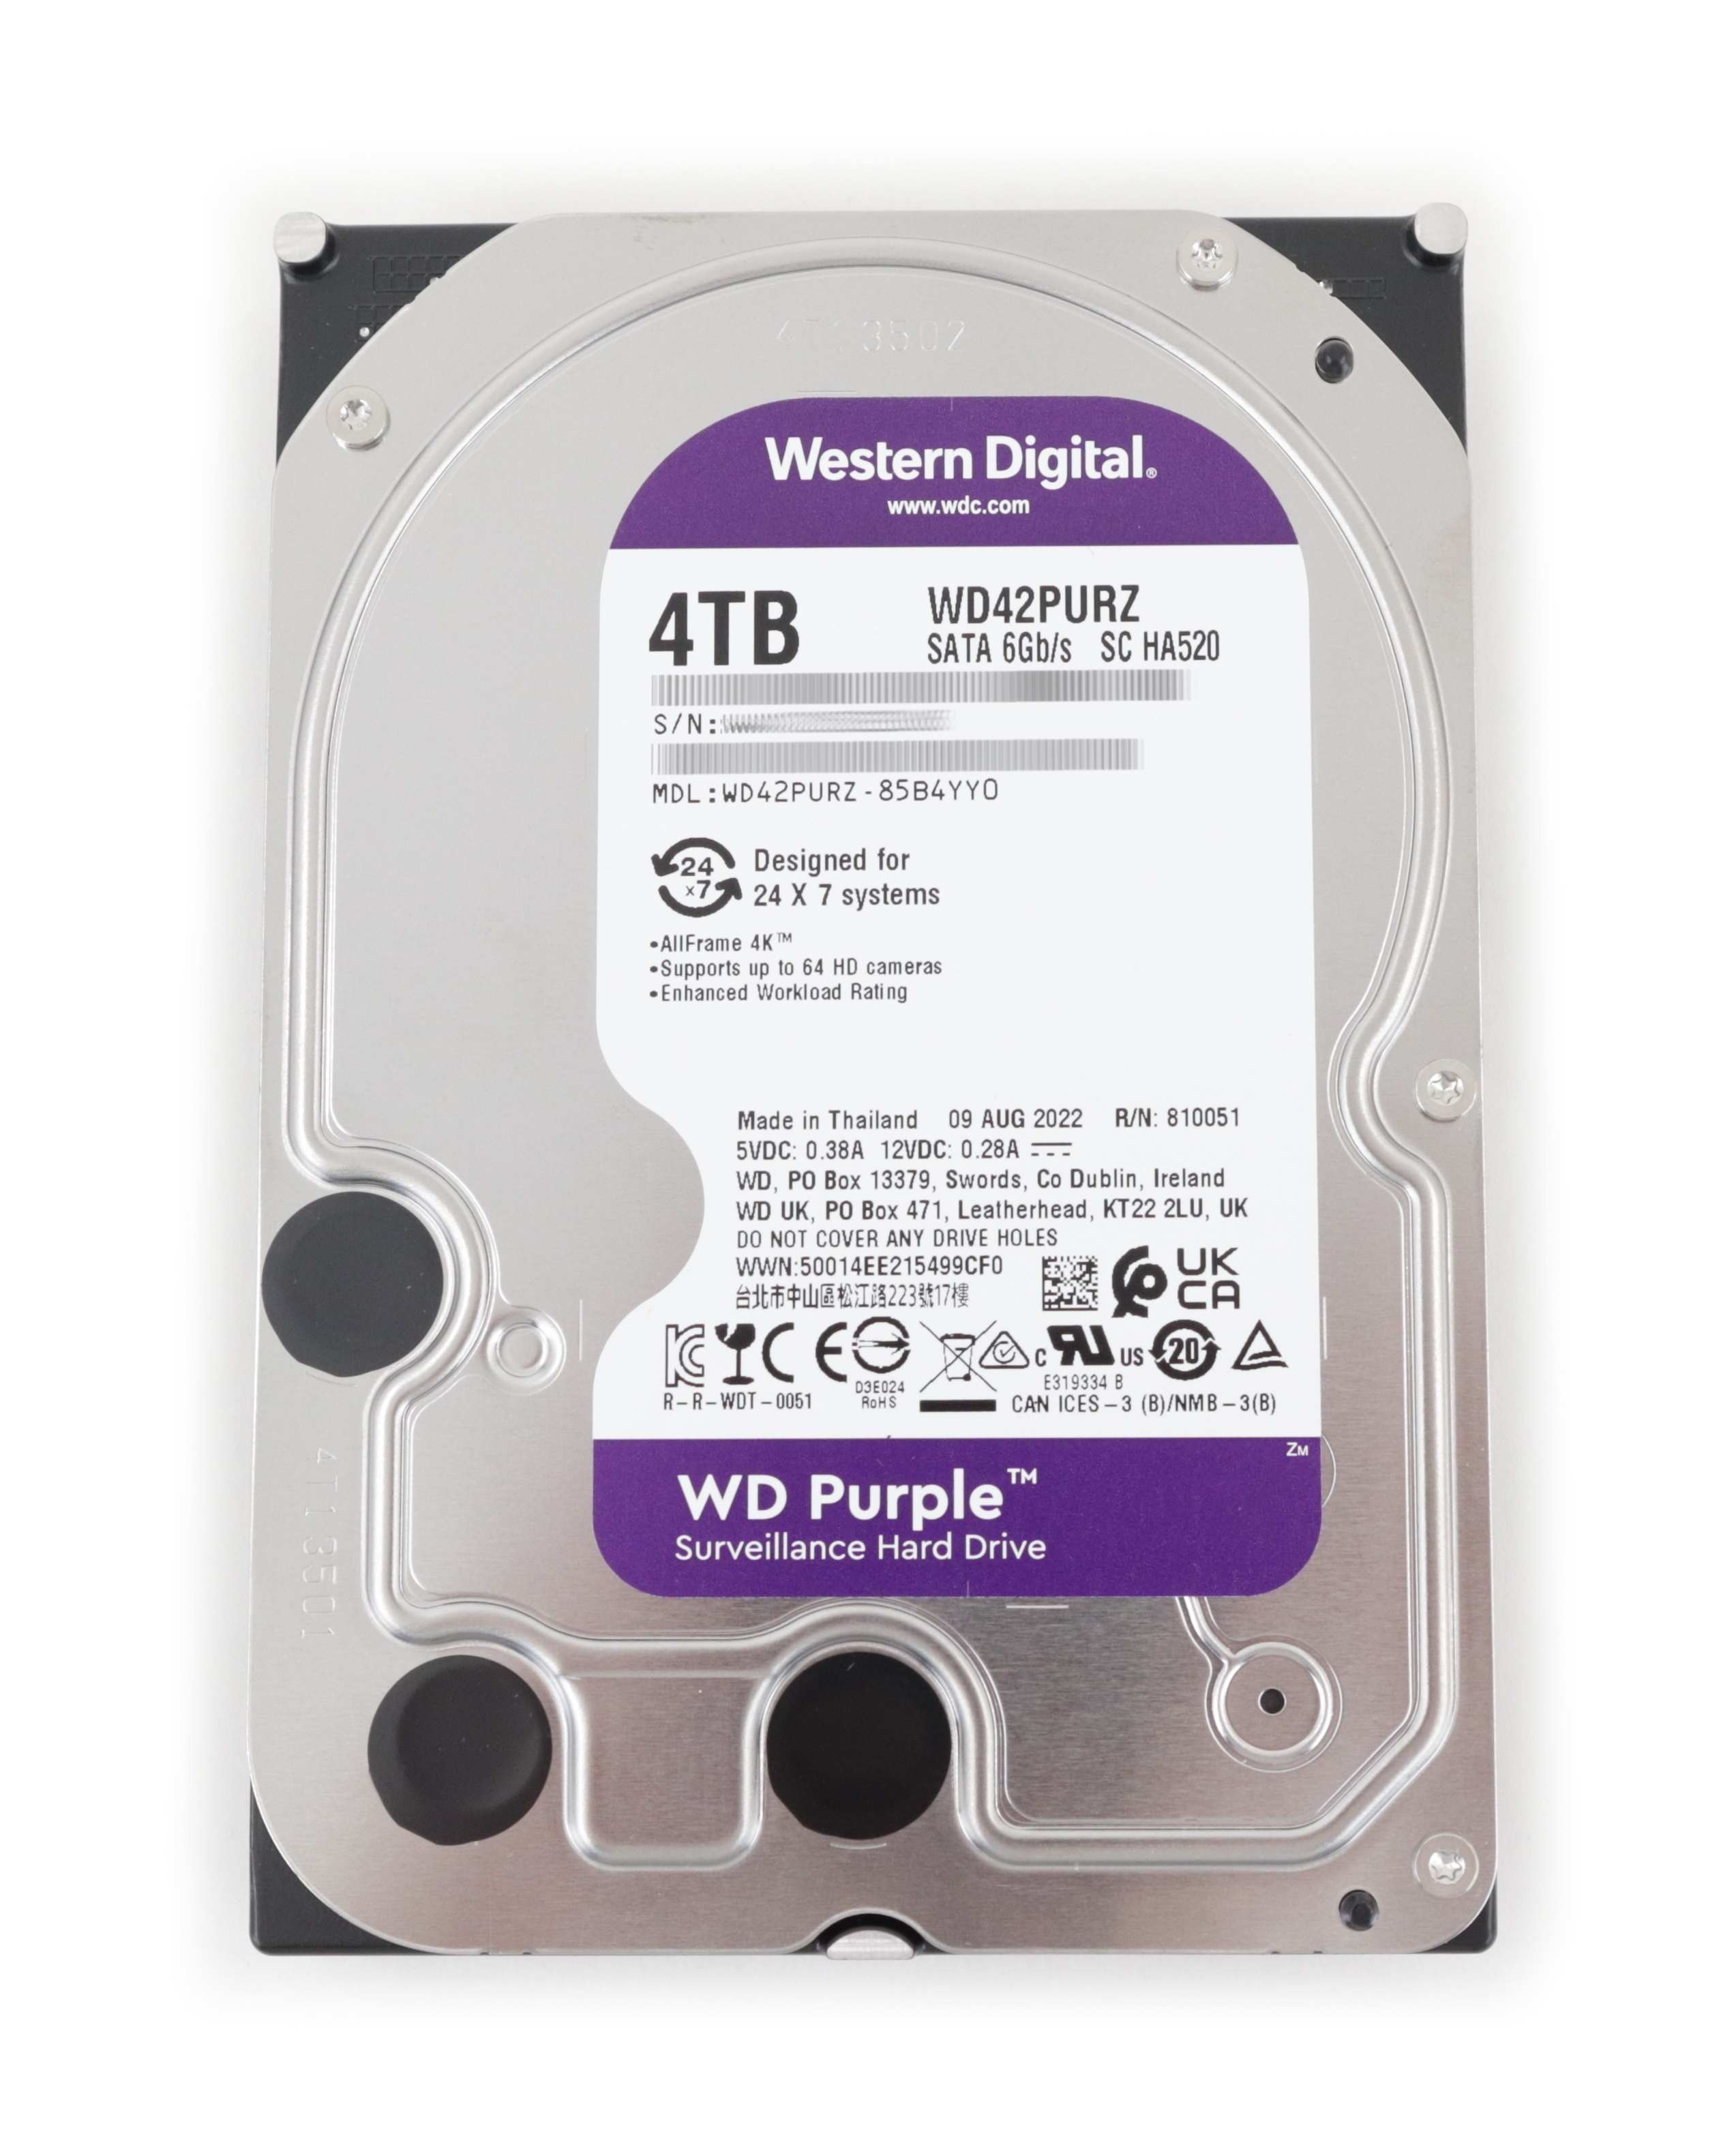 WD Purple Surveillance 4TB WD42PURZ-85B4YY0 SC HA520 SATA 6GB/s Cache 256MB 3.5